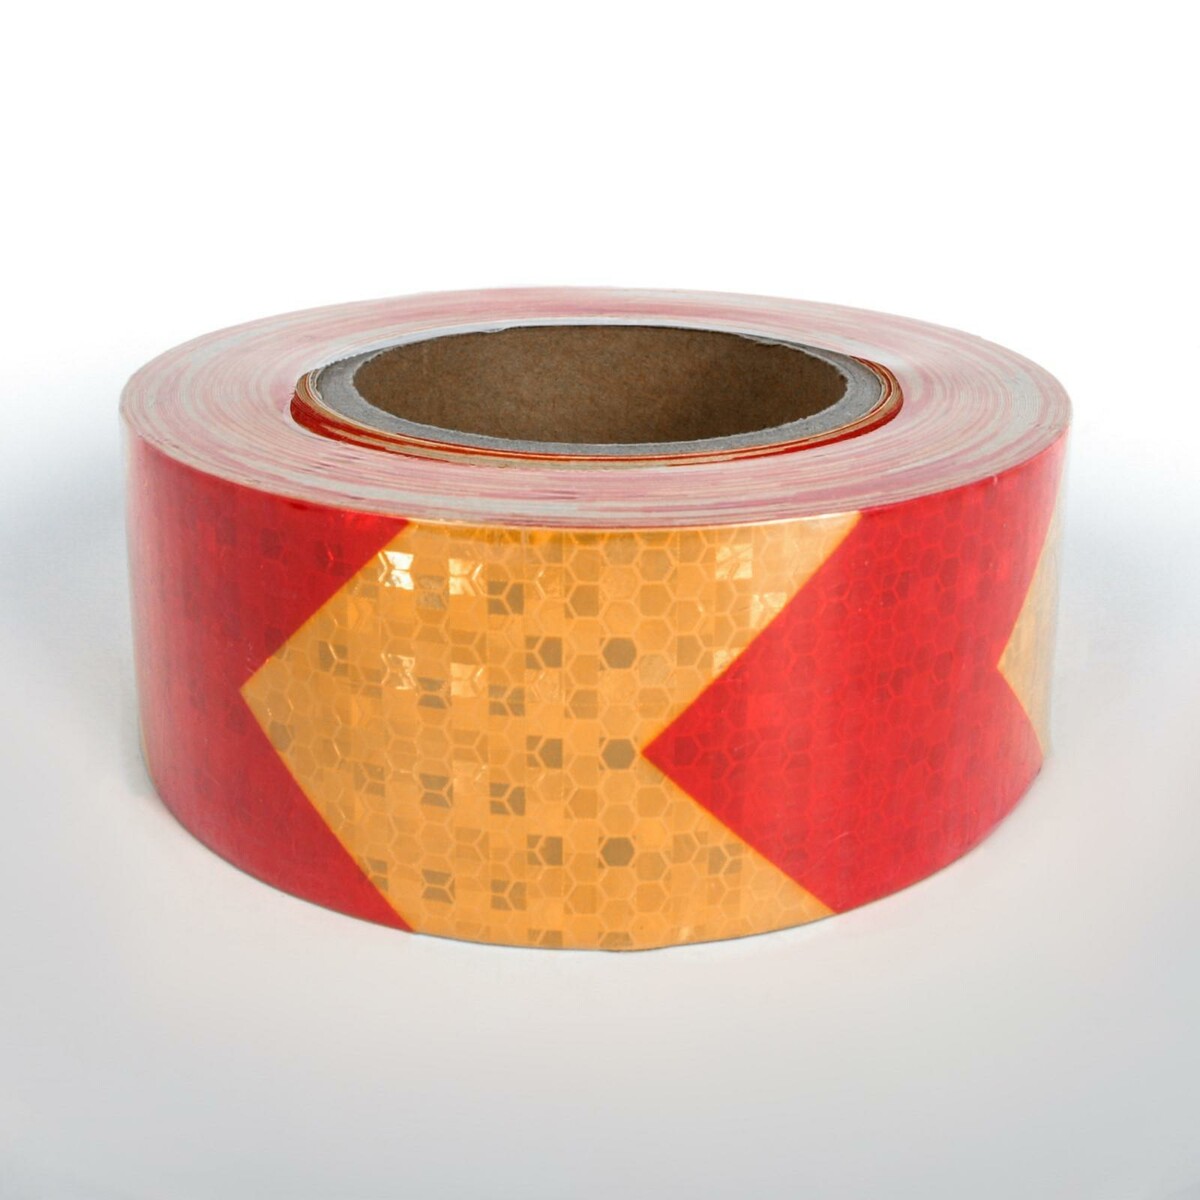 Светоотражающая лента, самоклеящаяся, желто-красная, 5 см × 25 м лента в кассете tze 561 36 мм ламинированная на синем фоне 8 м